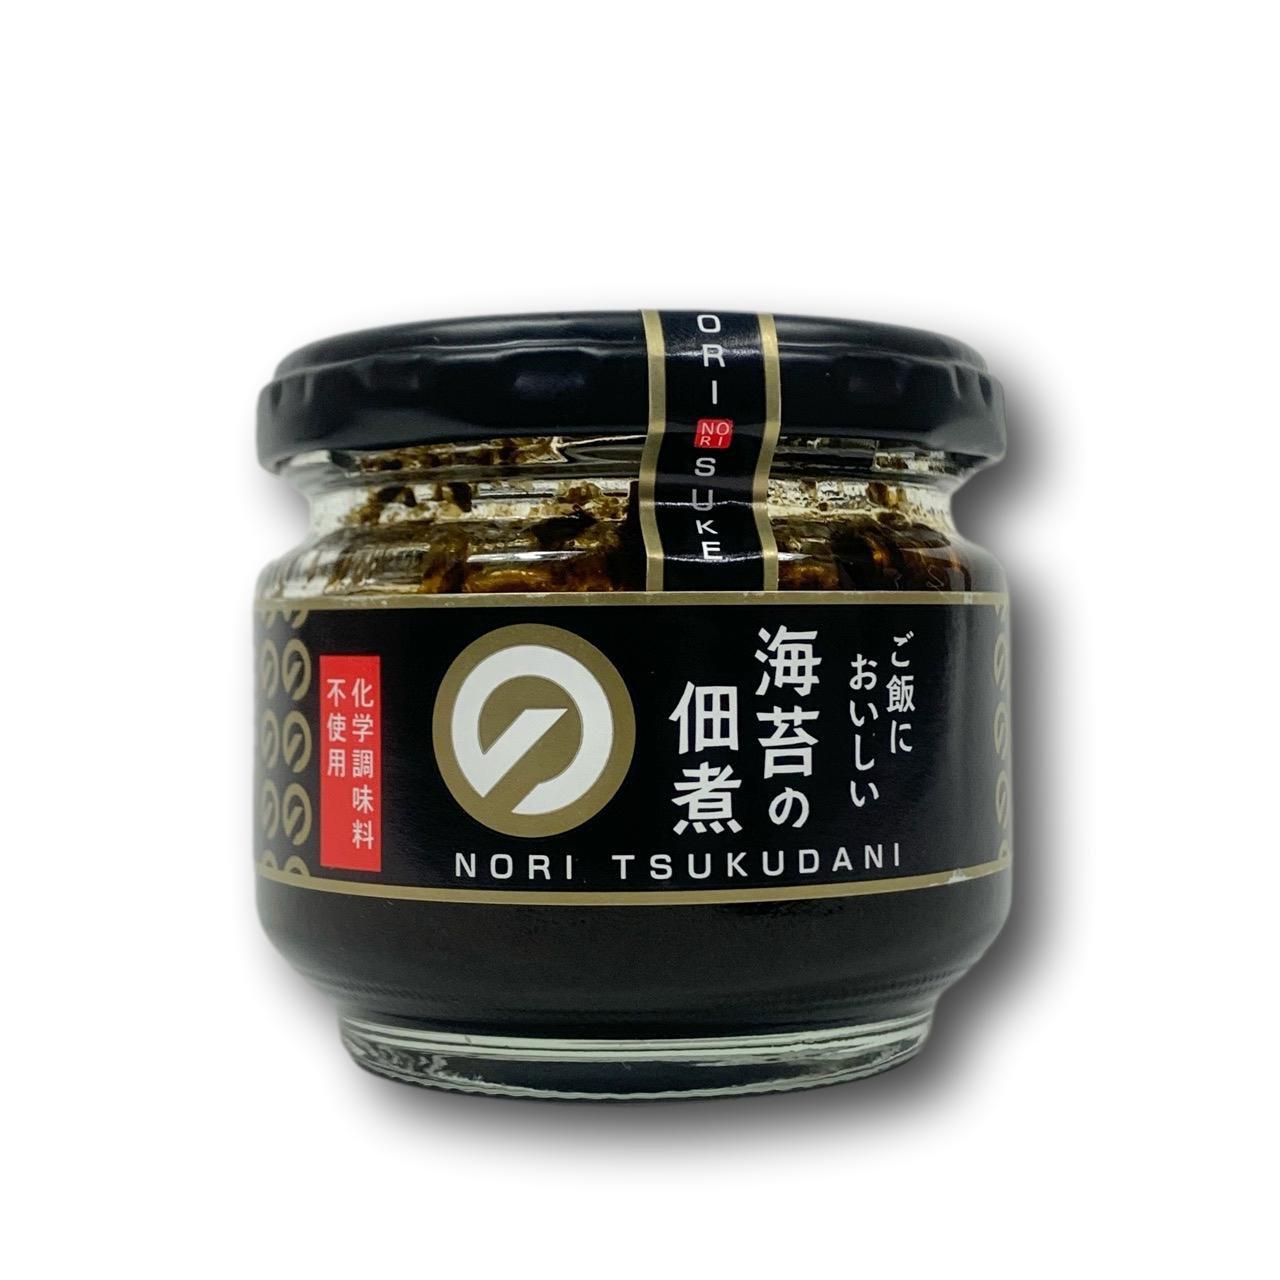 Daihoku Nori Tsukudani Seasoned Nori Seaweed Paste 90g - YOYO JAPAN